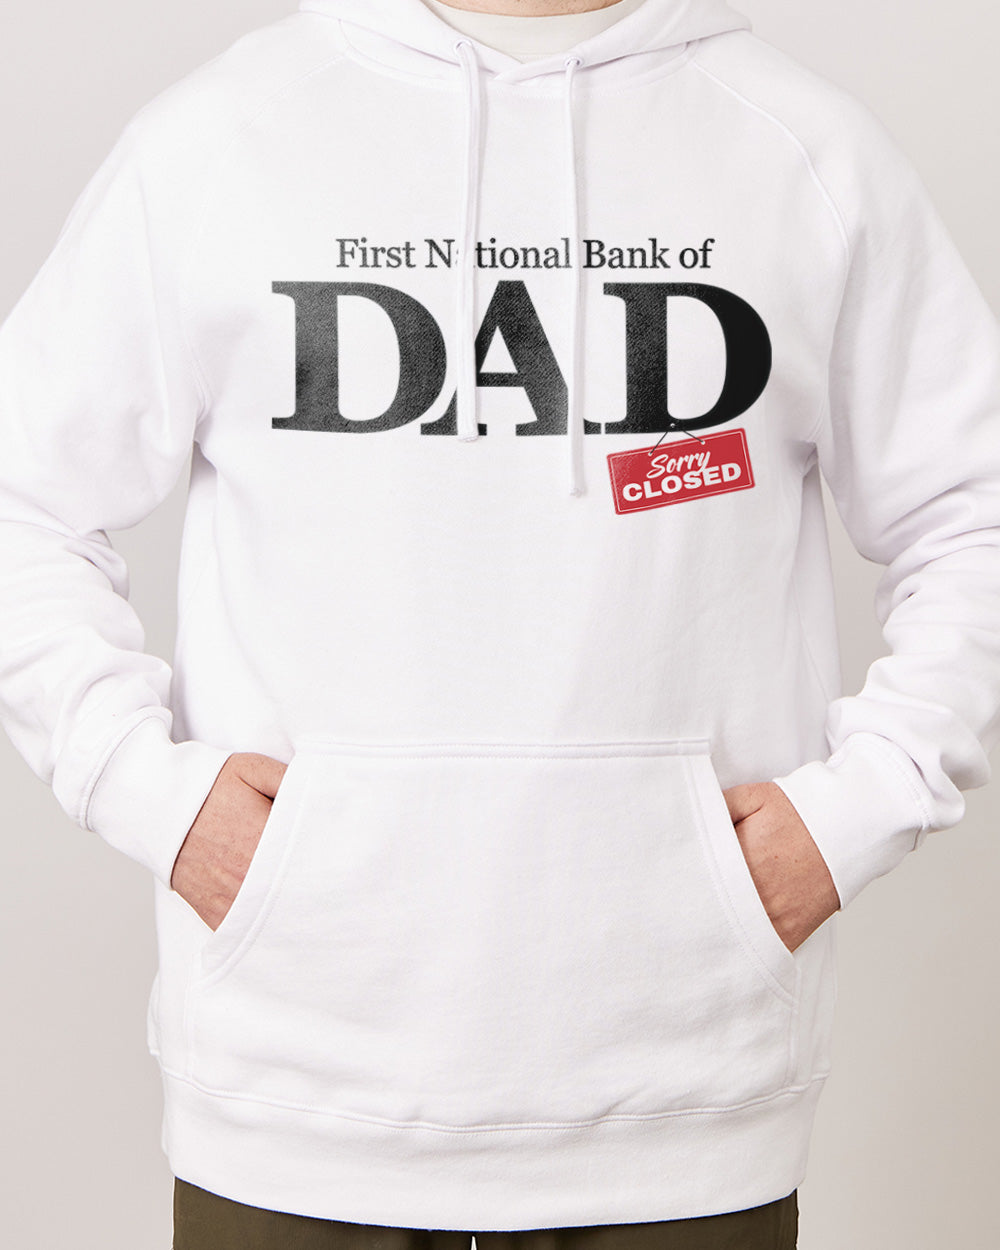 Bank of Dad Hoodie Australia Online 